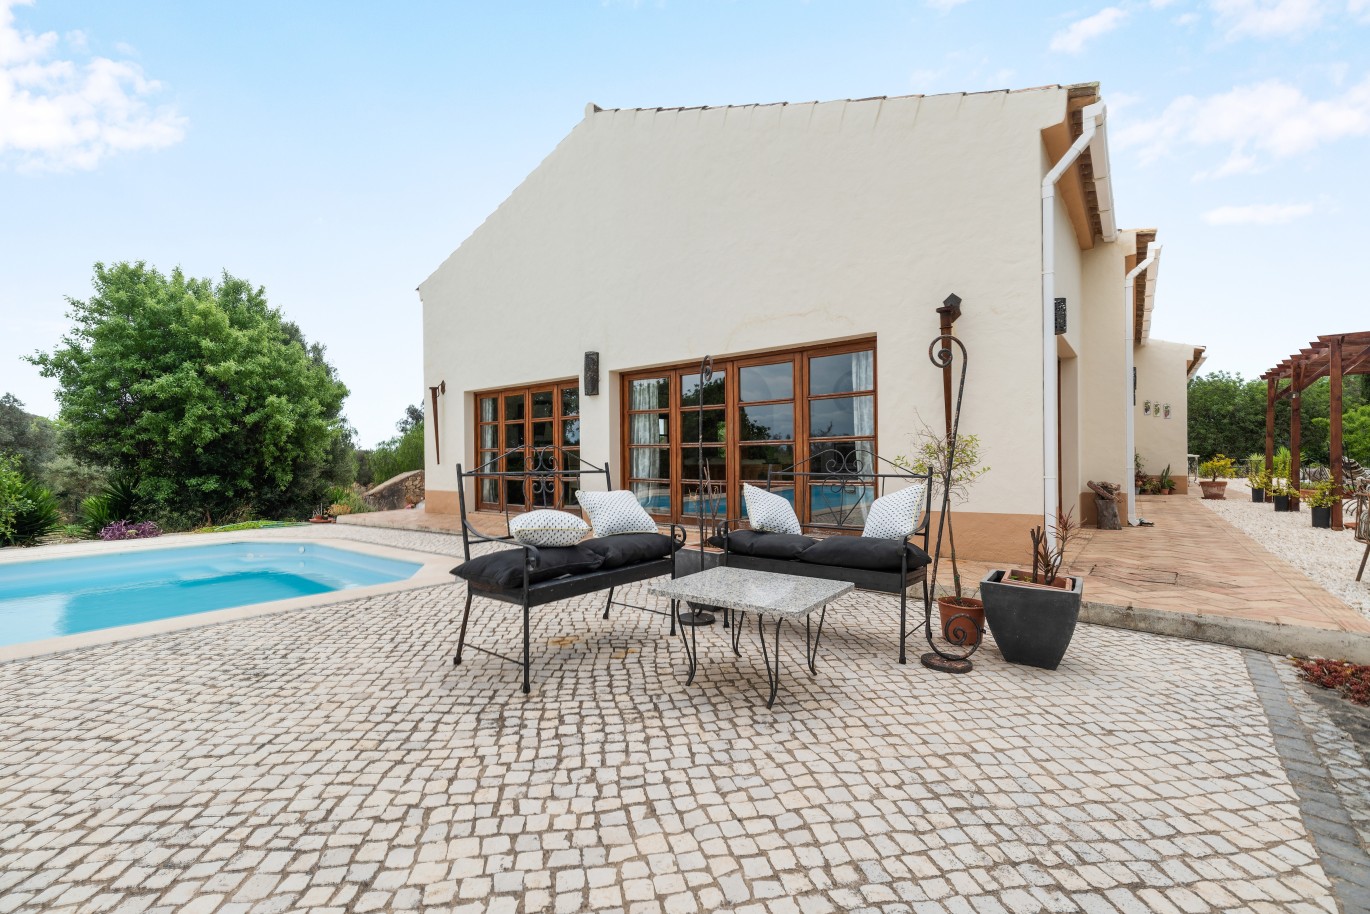 Moradia V3 com piscina, para venda, em Mexilhoeira Grande, Algarve_227523